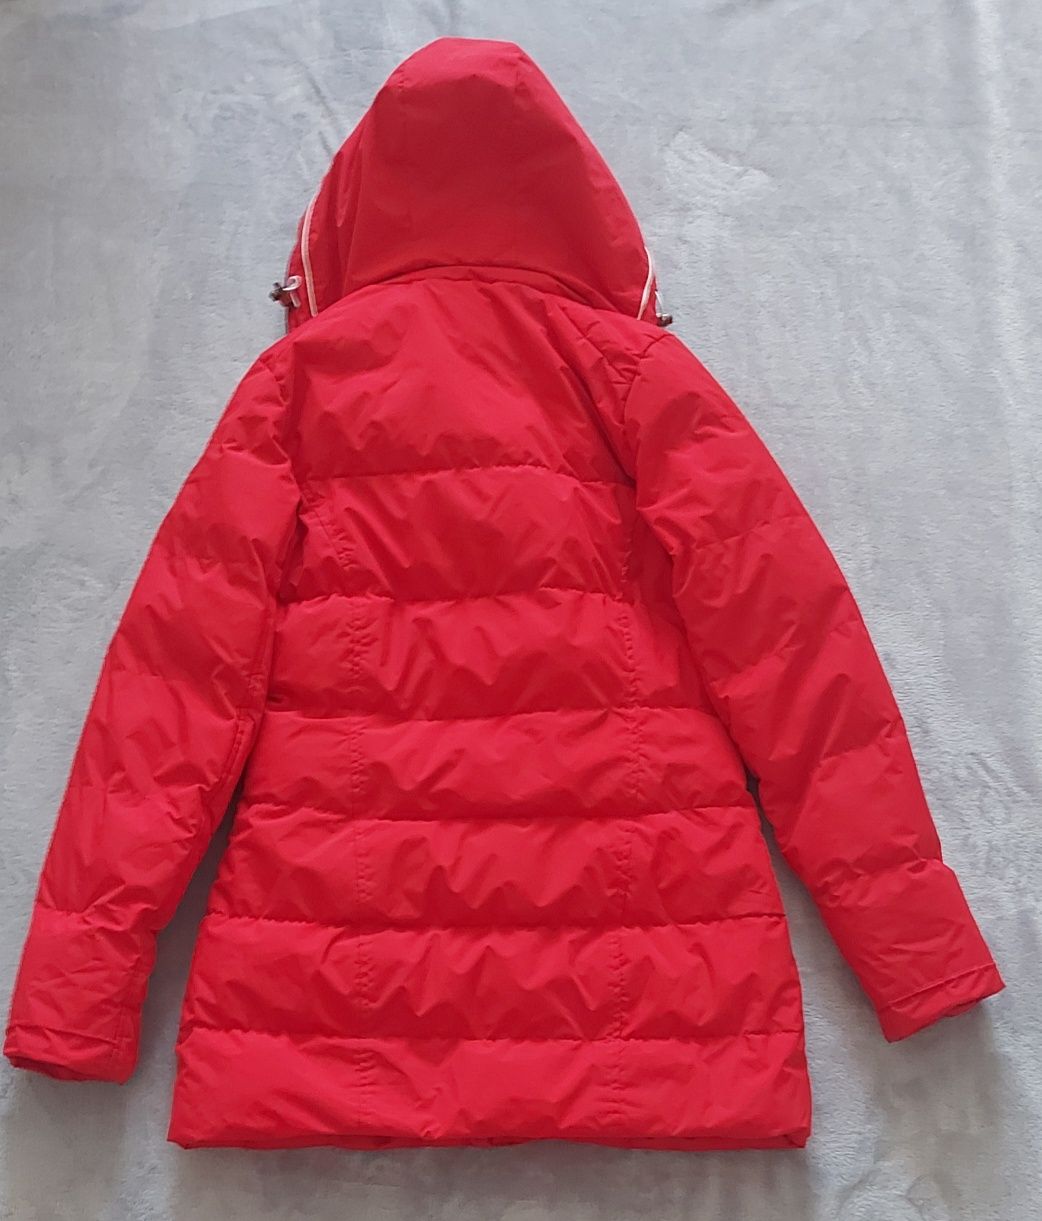 Куртка Northland жіноча червона розмір S , укр. розмір 44-46